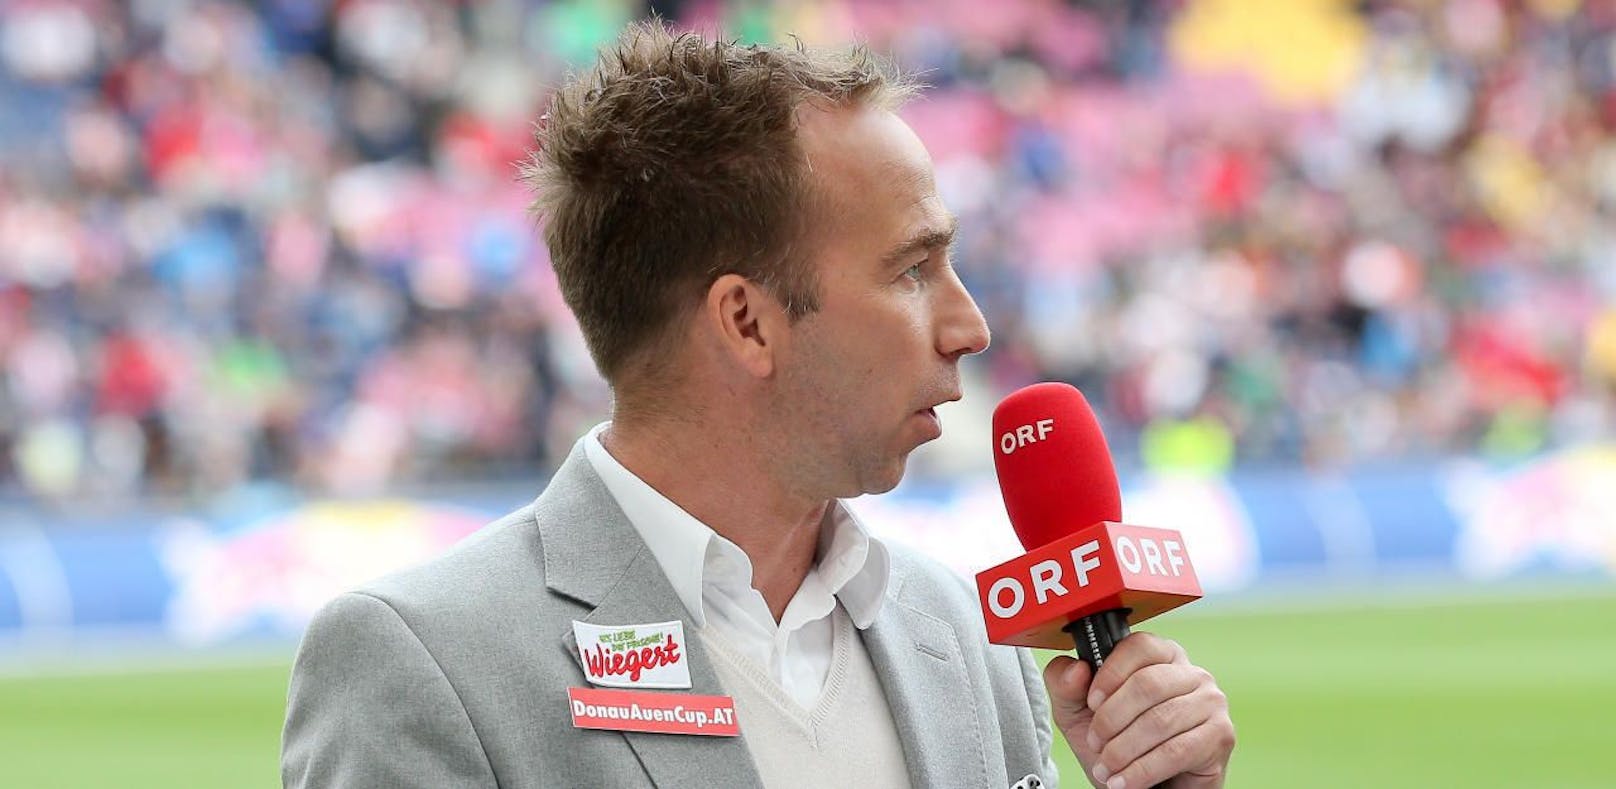 Roman Mählich darf seinen ORF-Job behalten